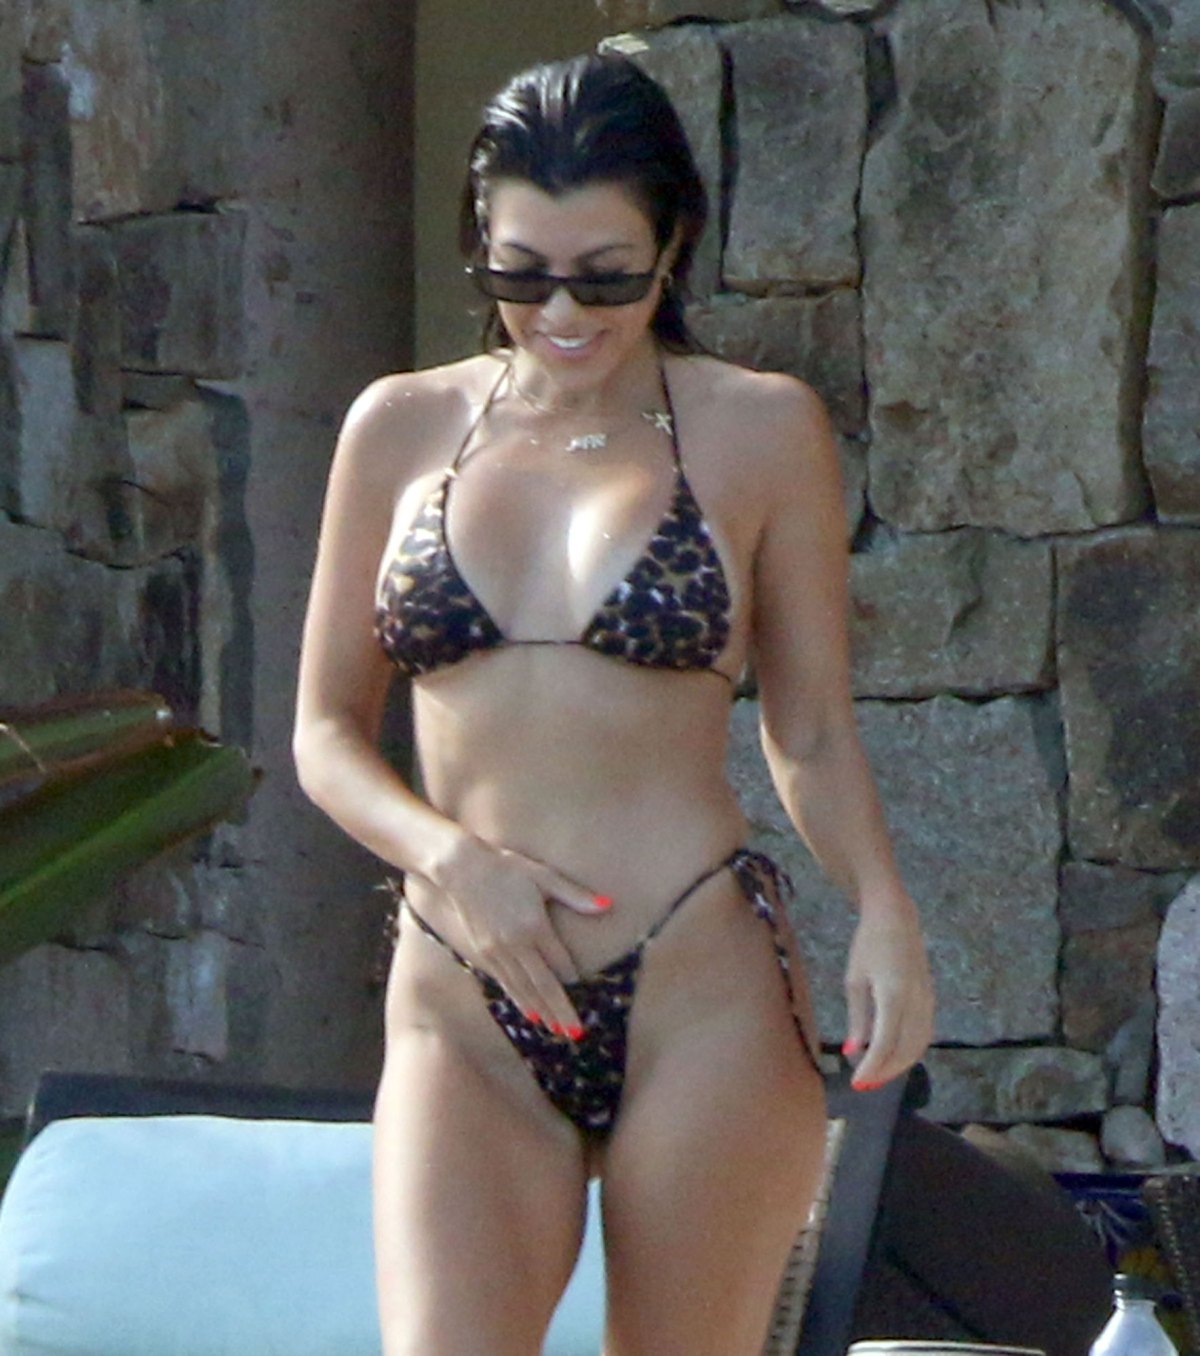 Kourtney Kardashian Shows Off Toned Bikini Body In Mexico